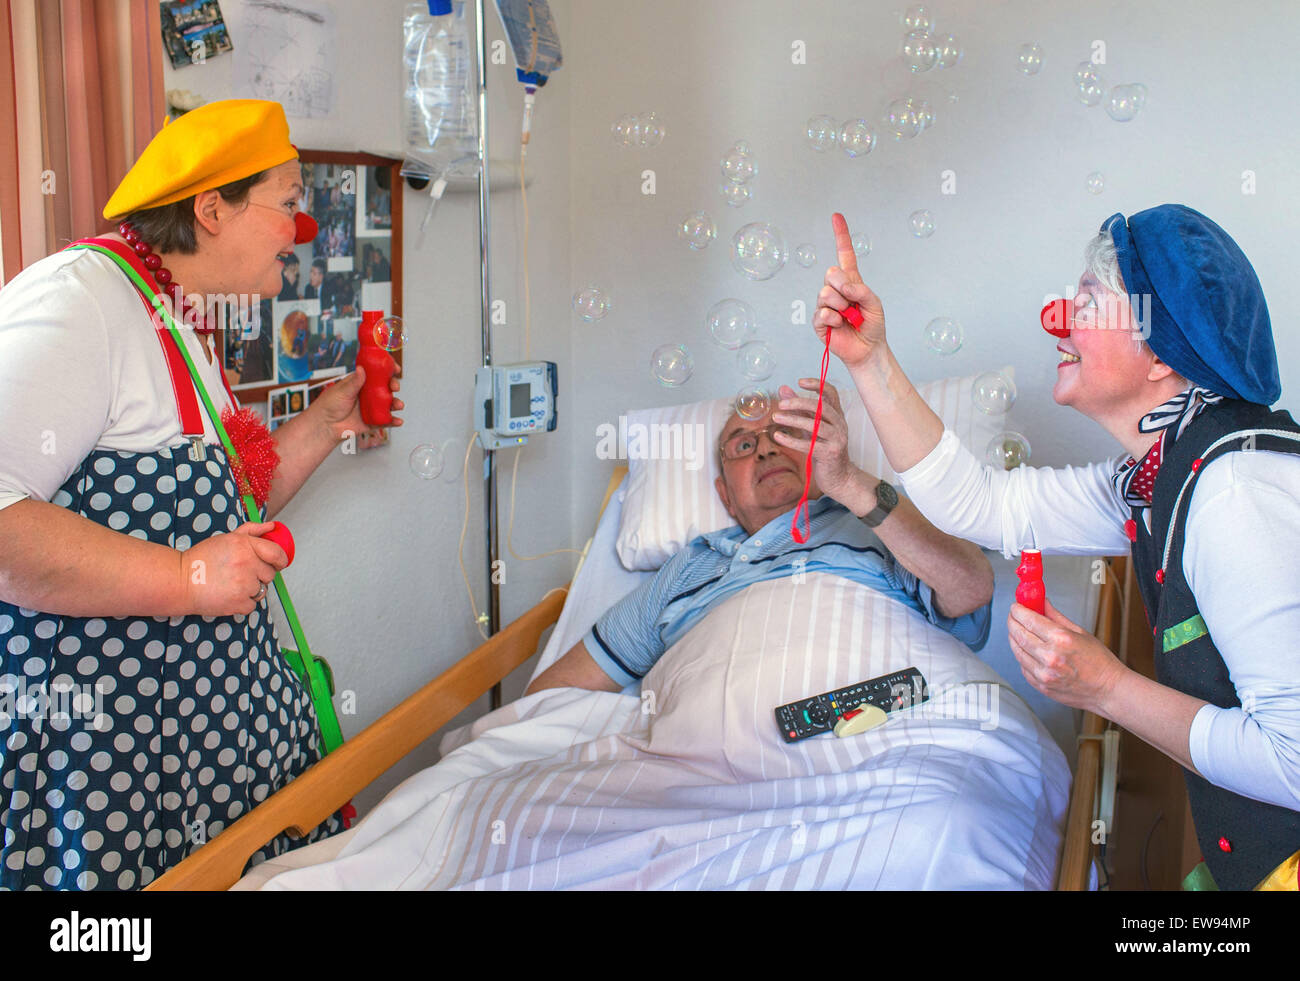 Schwerin, Germania. 05 Giugno, 2015. Ospedale clown "bene" (Ines Vowinkel, R) e 'Kiki' (Kerstin Daum) sorpresa Guenther Piehl con bolle di sapone durante un tour attraverso i reparti di assistenza infermieristica del 'Augustenstift' nursing home in Schwerin, Germania, 05 giugno 2015. I clown hanno visitato i pazienti dementi e le persone che richiedono una cura una volta al mese per gli ultimi due anni. Foto: Jens Buettner/dpa/Alamy Live News Foto Stock